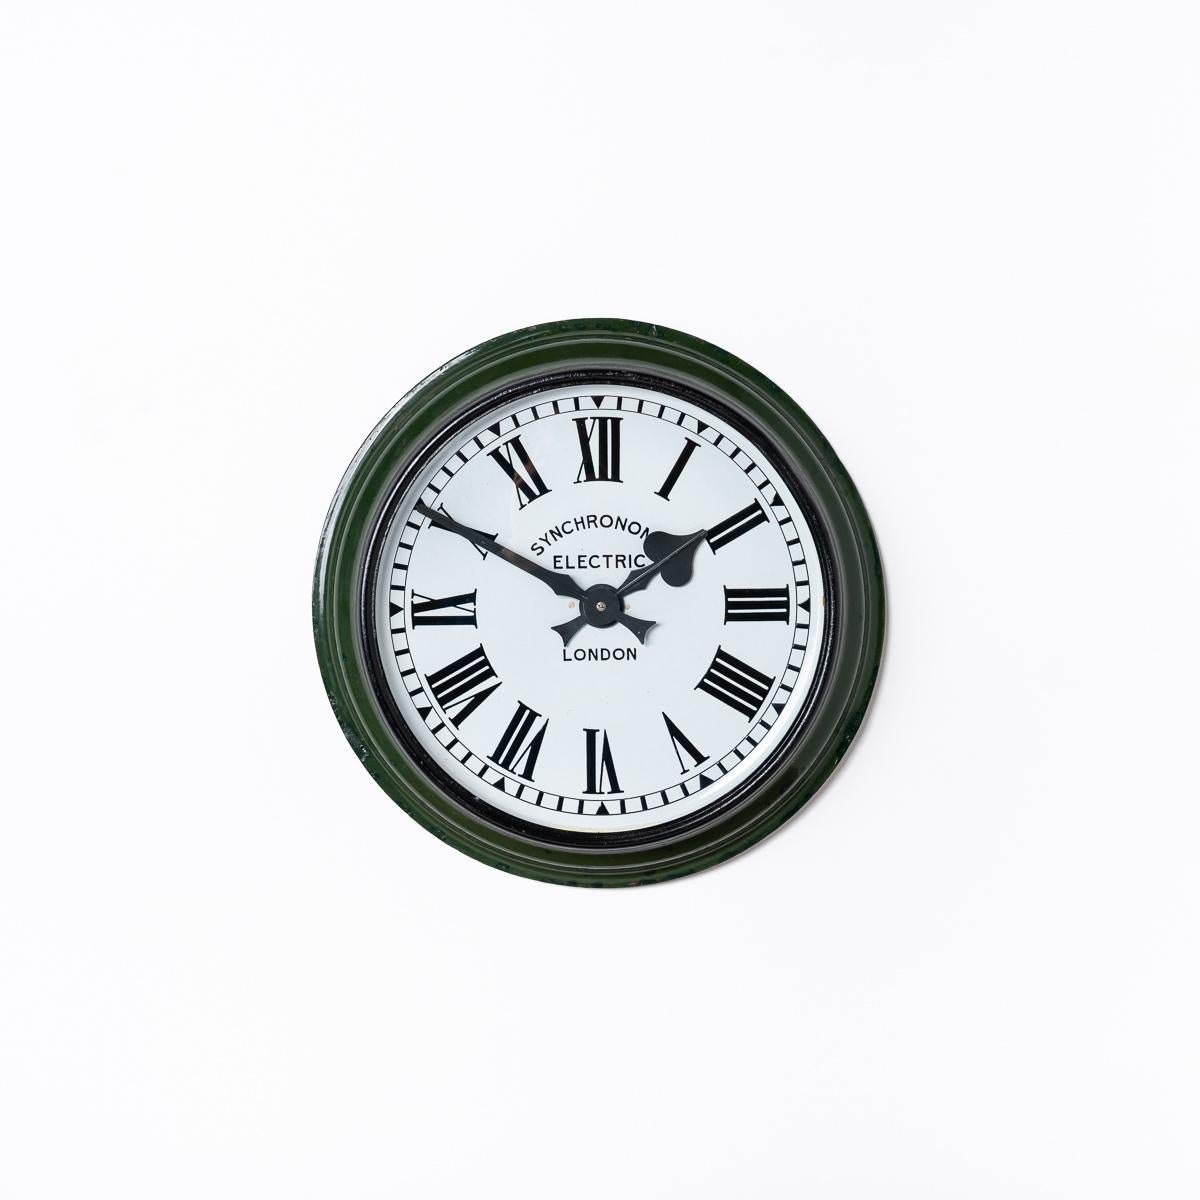 Wir präsentieren die wunderschöne Original Railway Clock von Synchronome - ein Meisterwerk der britischen Uhrmacherkunst. Diese um 1920 in England von The Synchronome Company Ltd. gefertigte Uhr ist ein Beispiel für das Engagement der Marke, die